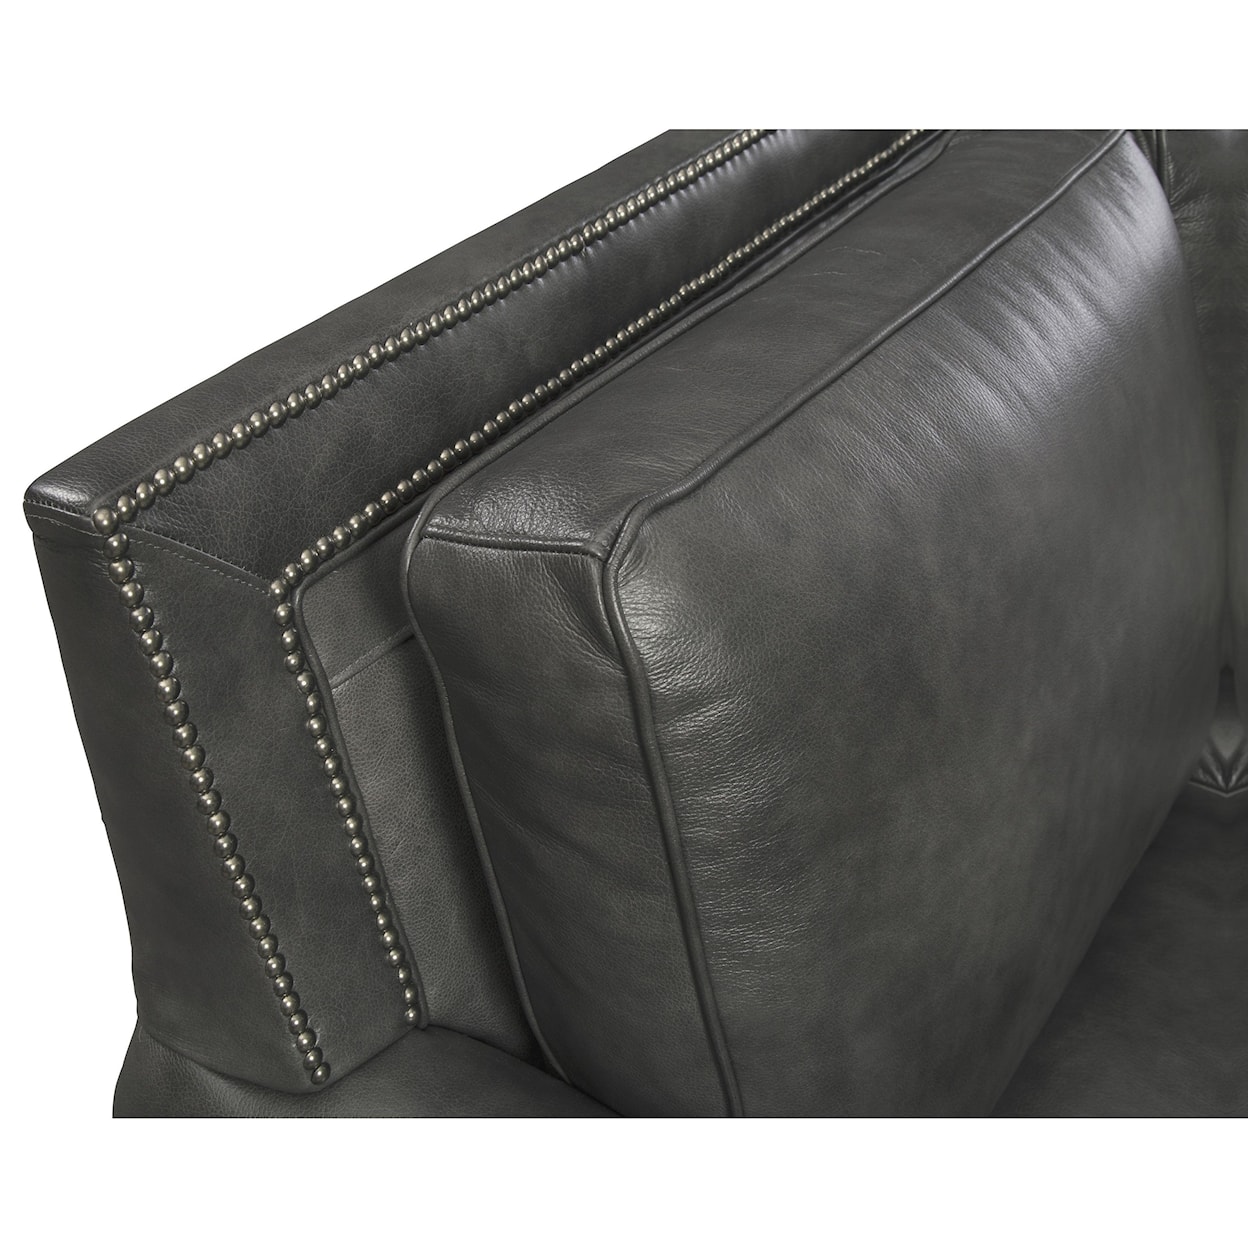 Hickory Craft L793550BD Sofa